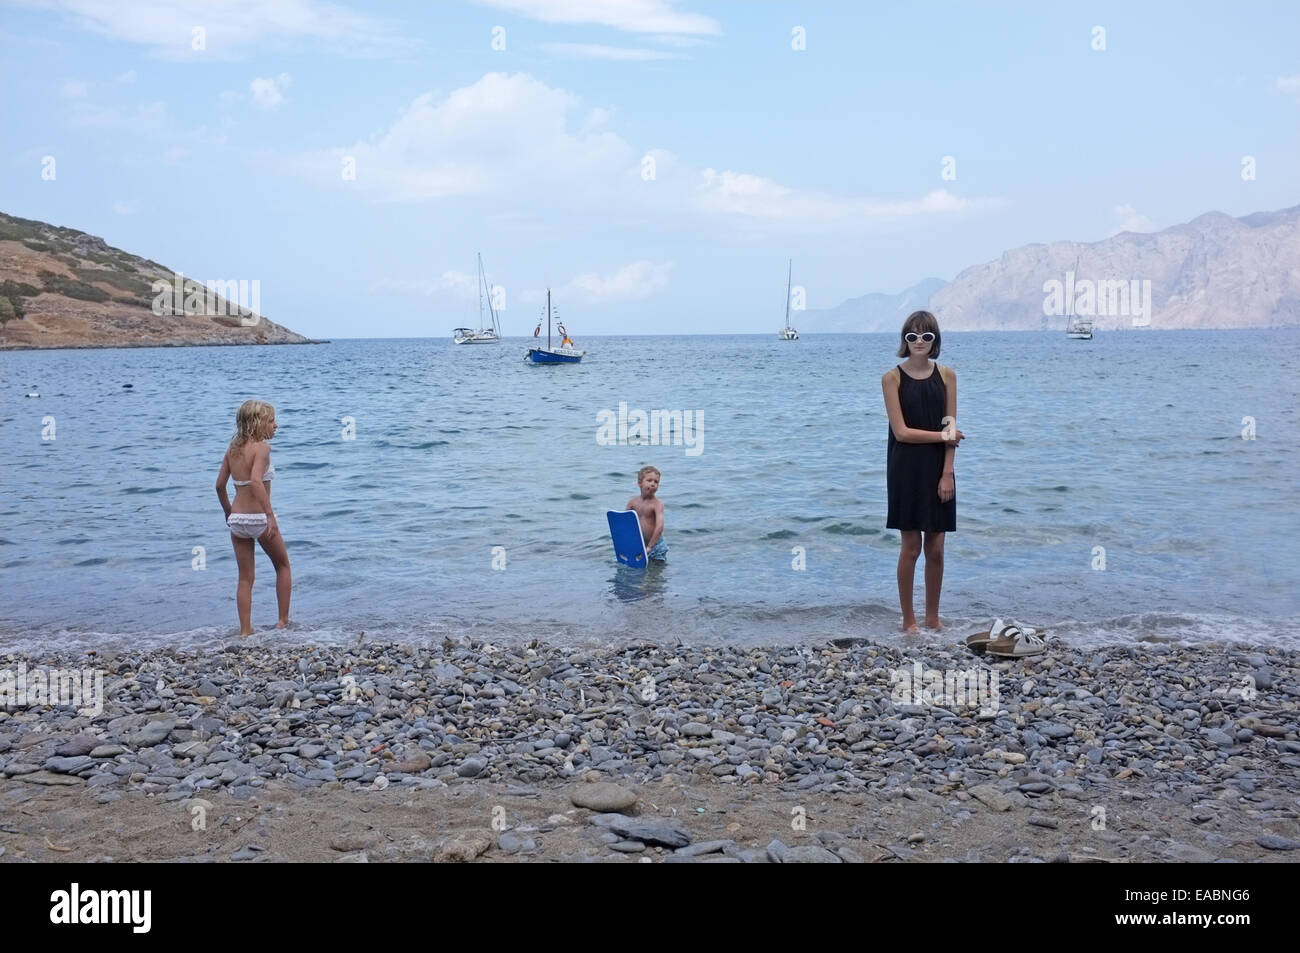 Una ragazza adolescente in vacanza a Creta guardato da due bambini Foto Stock